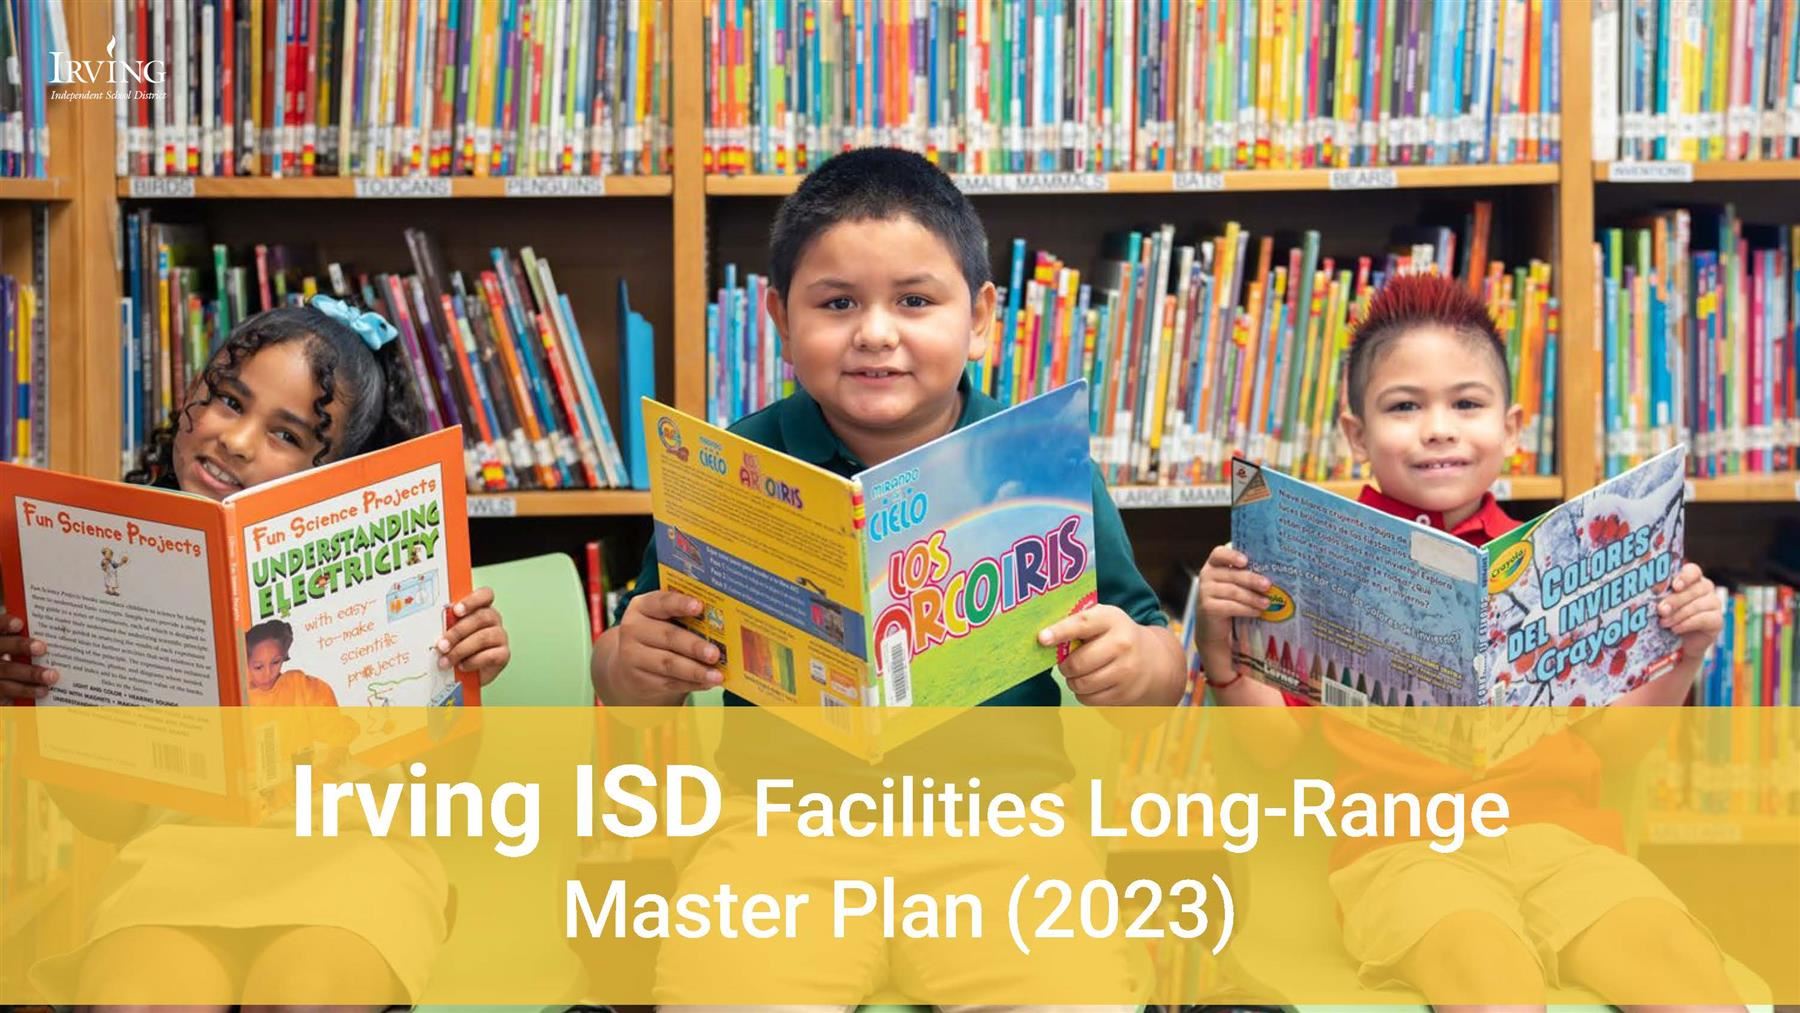 Irving ISD Facilities Long-Range Master Plan 2023